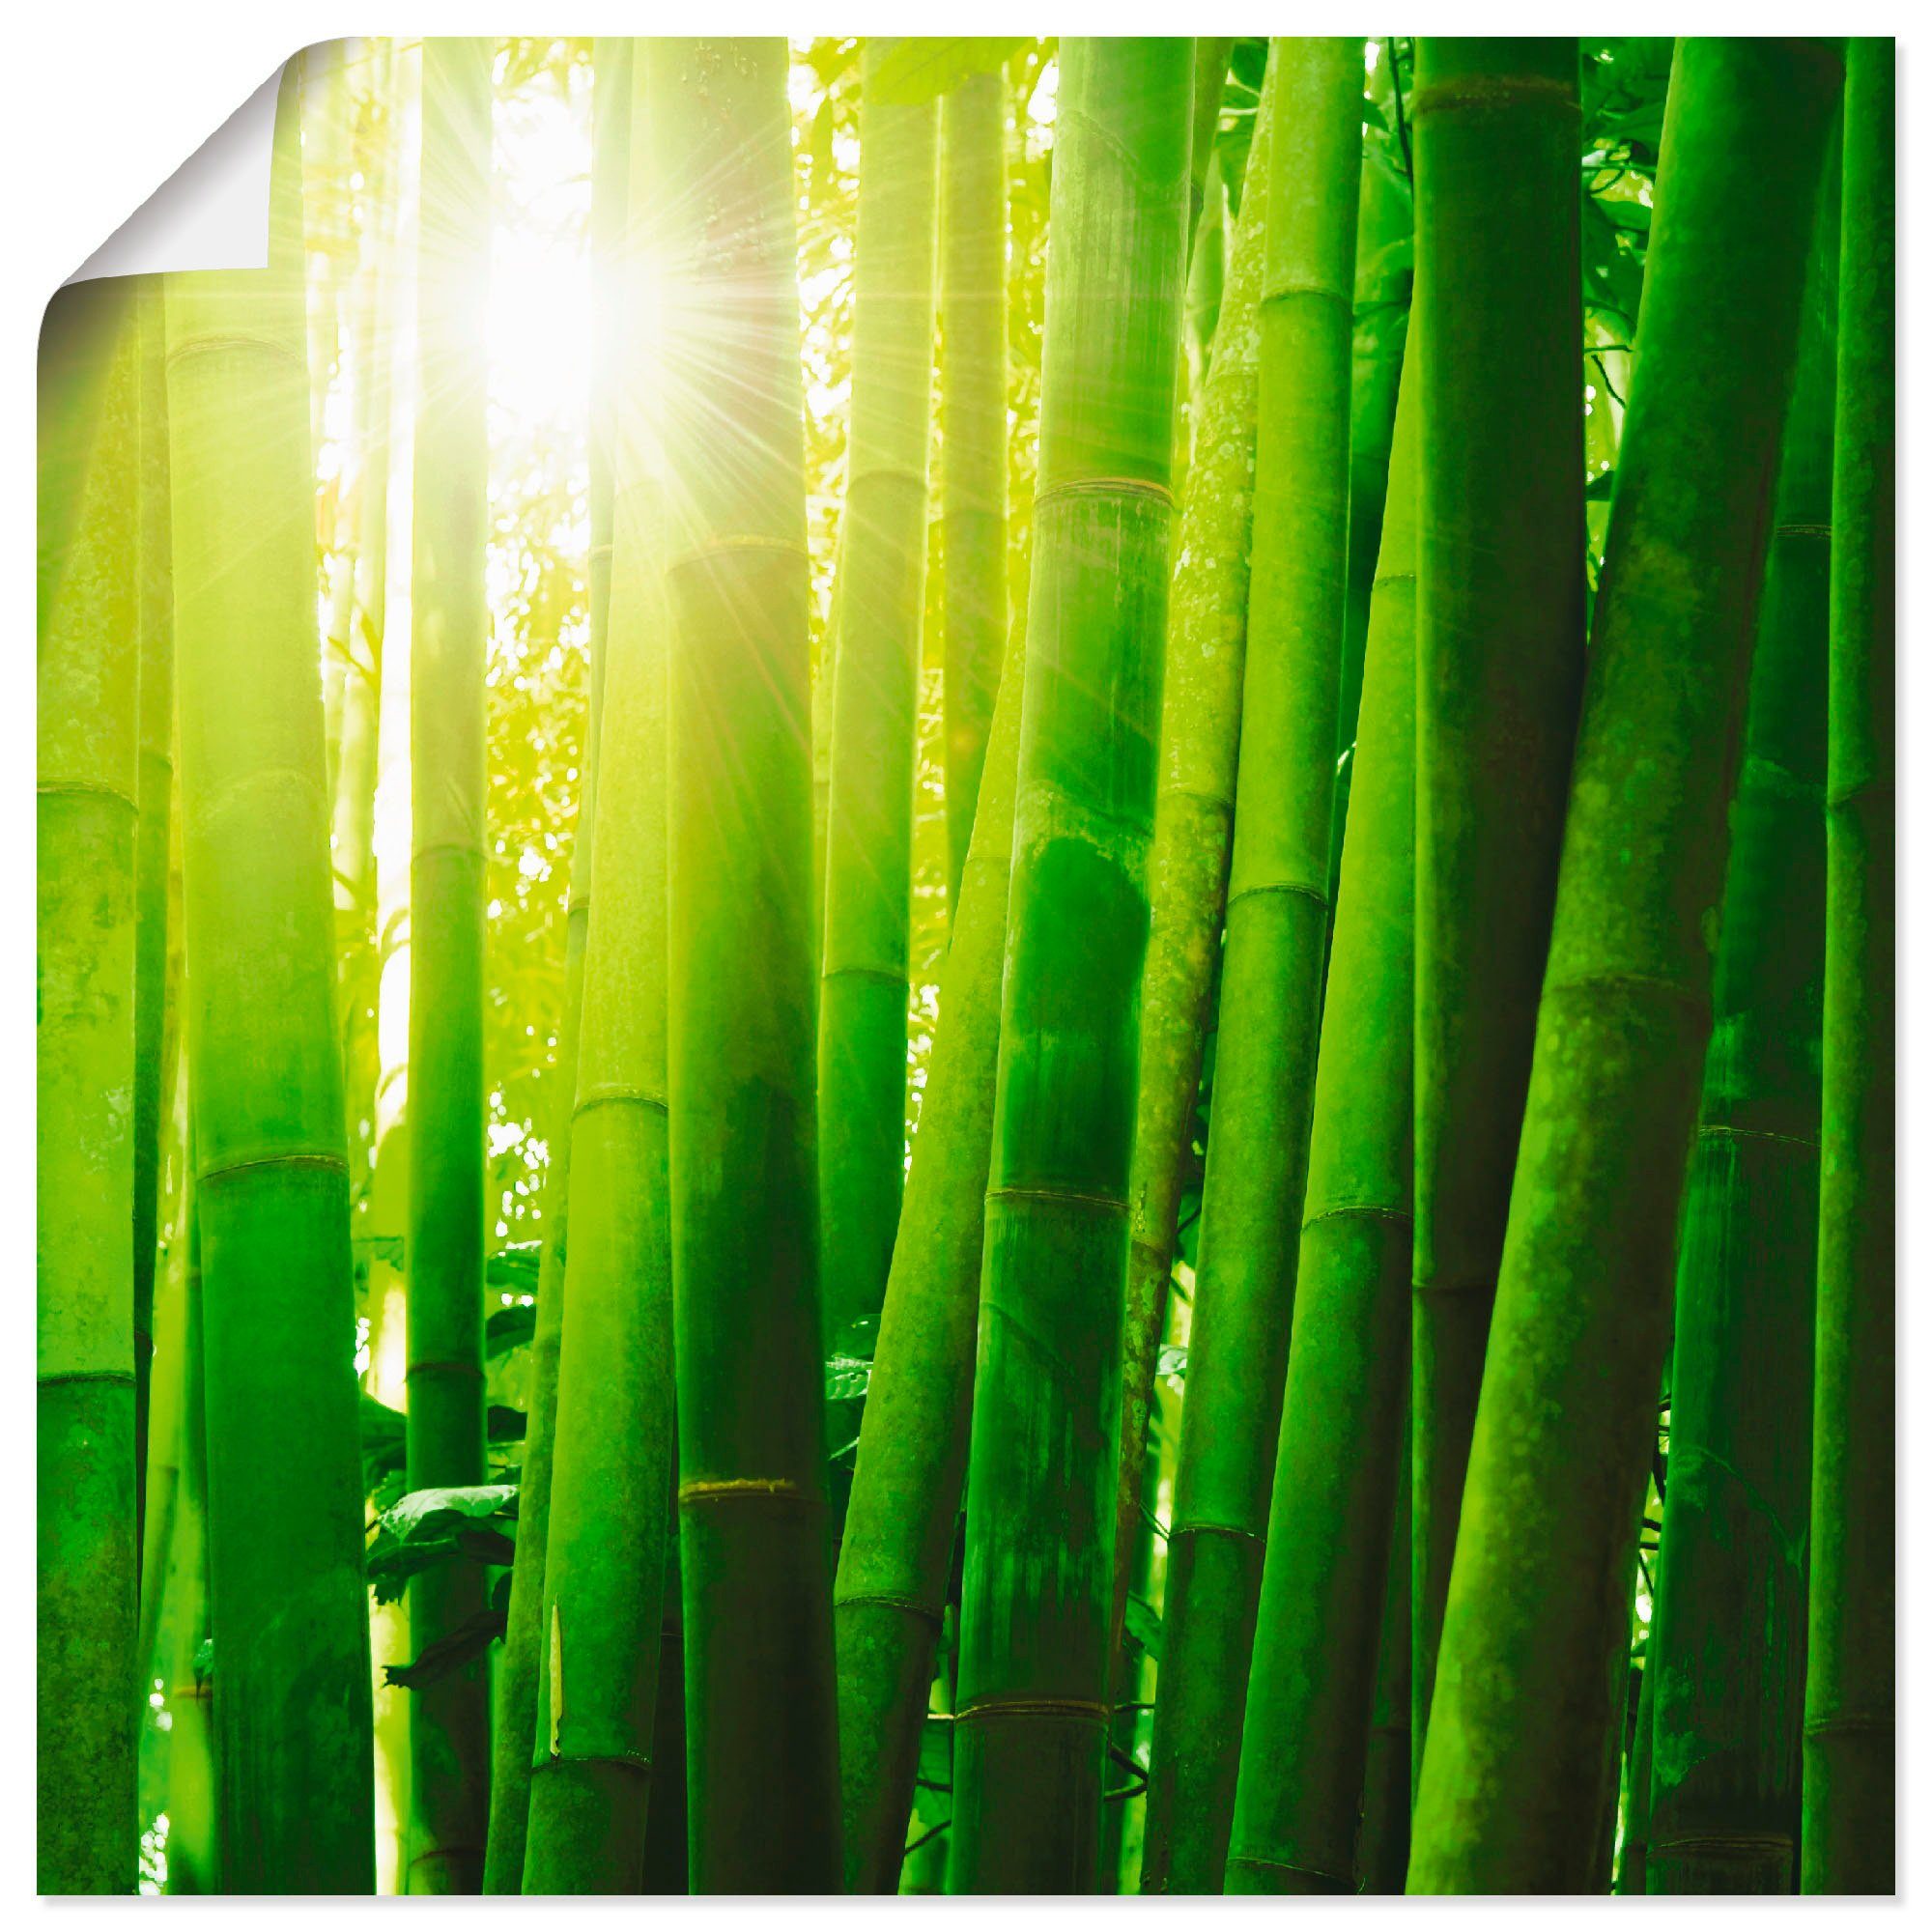 Artland Artprint Aziatisch bamboebos in ochtendlicht in vele afmetingen & productsoorten -artprint op linnen, poster, muursticker / wandfolie ook geschikt voor de badkamer (1 stuk)